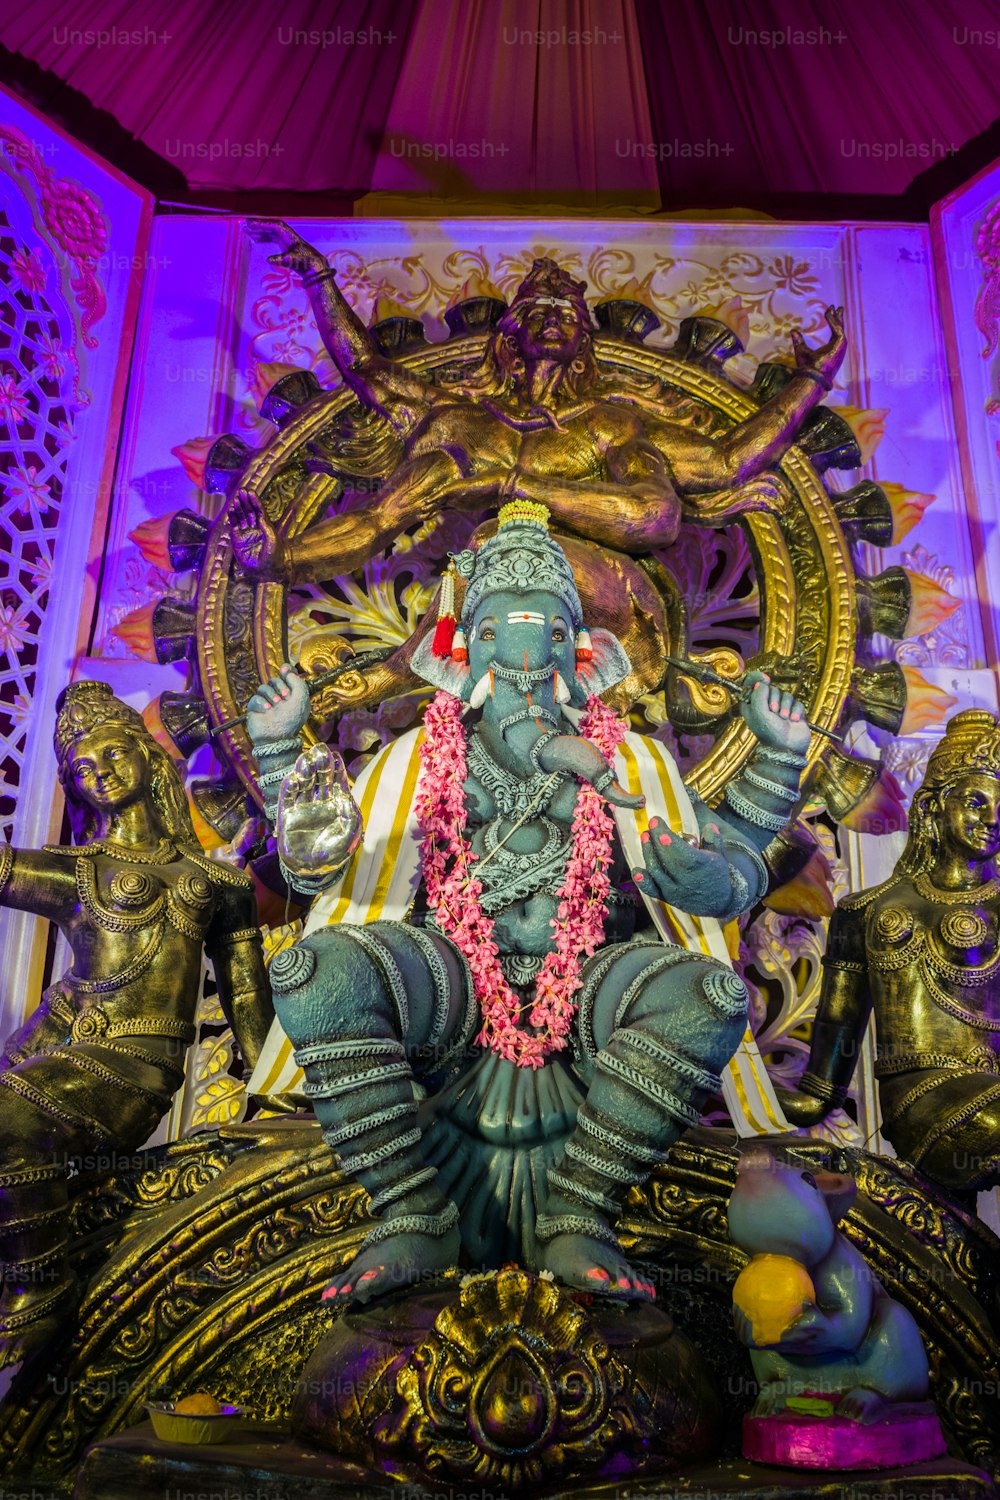 Una estatua del dios Ganesh en un templo